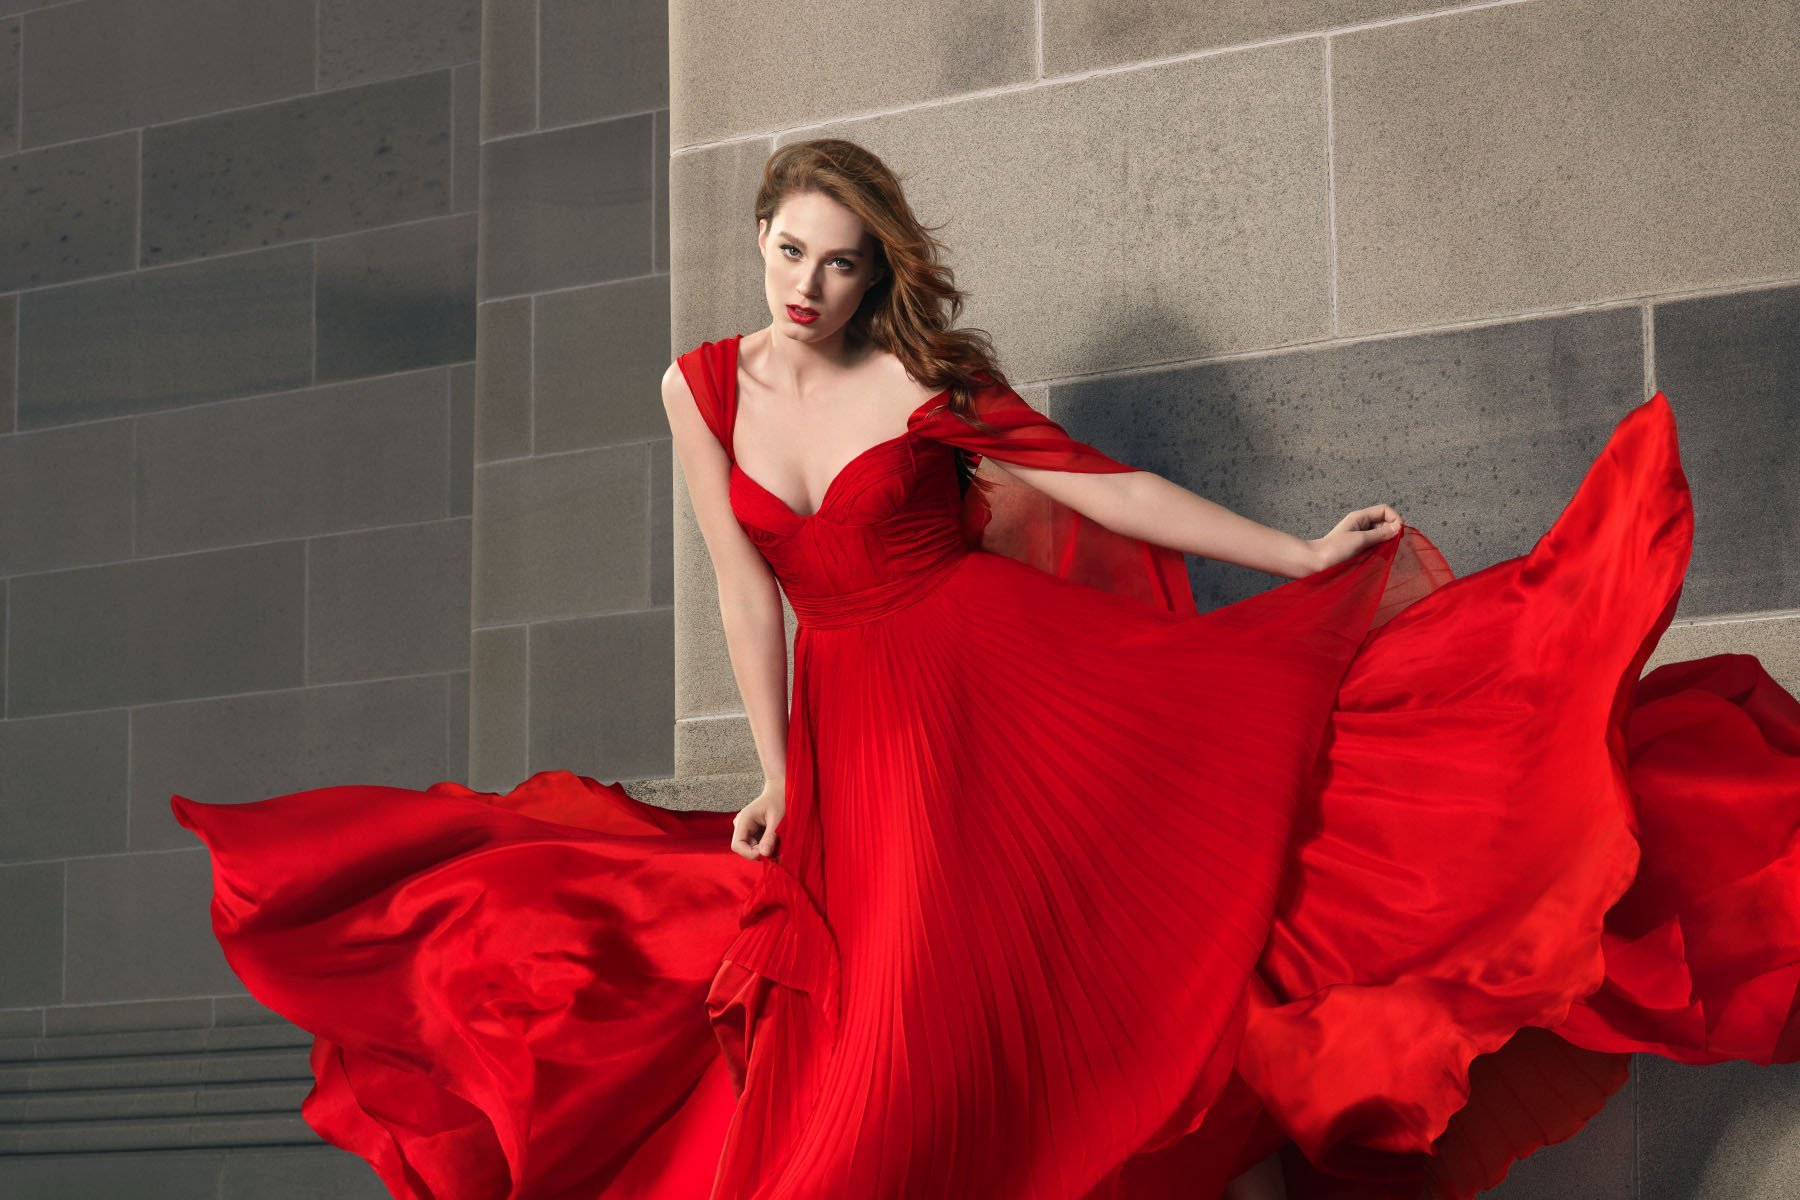 Фф душенька в красном. Красивое красное платье. Женщина в Красном платье.